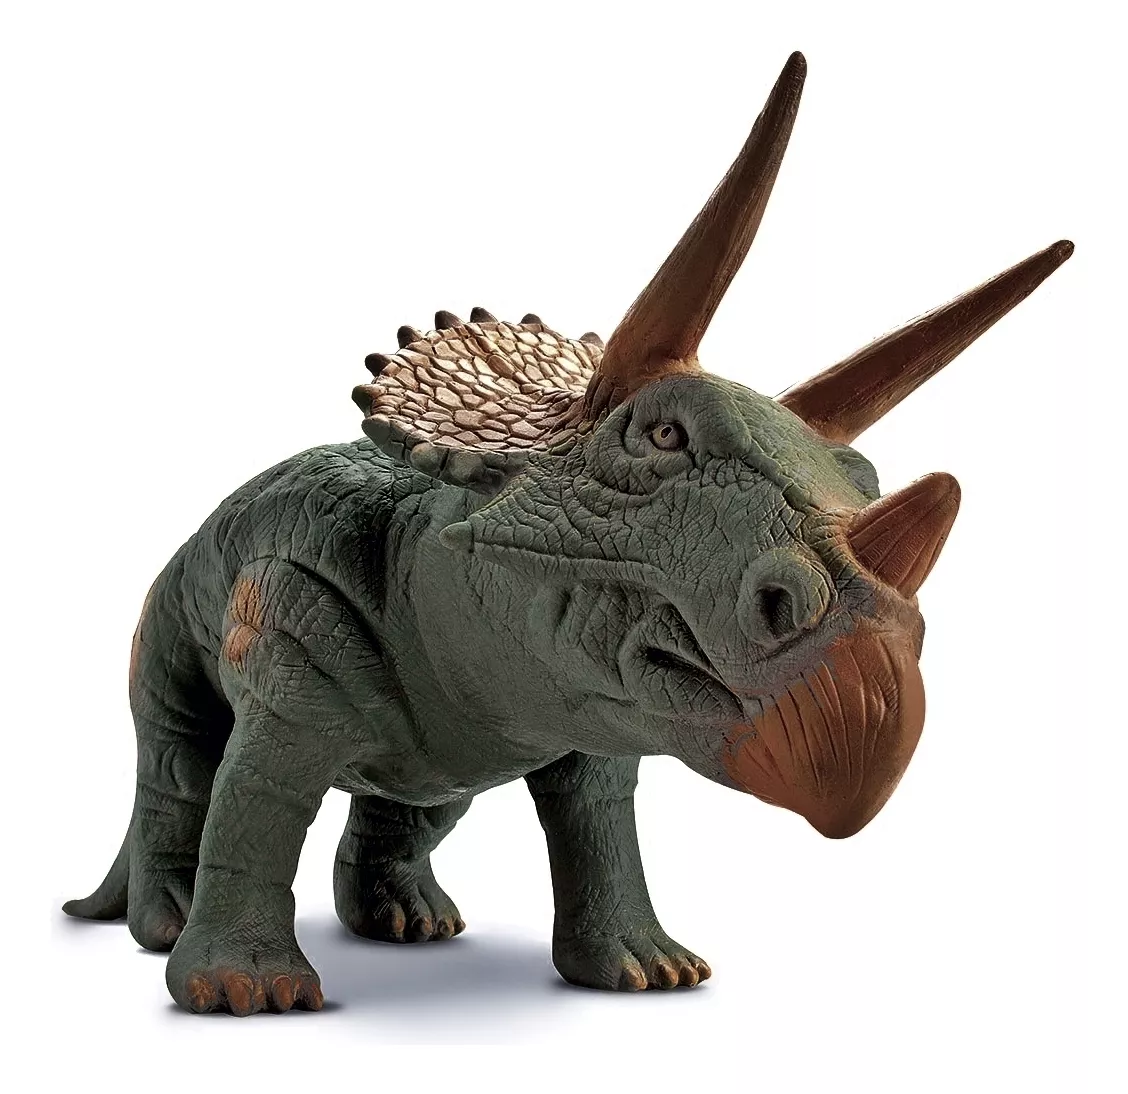 Segunda imagem para pesquisa de dinossauro